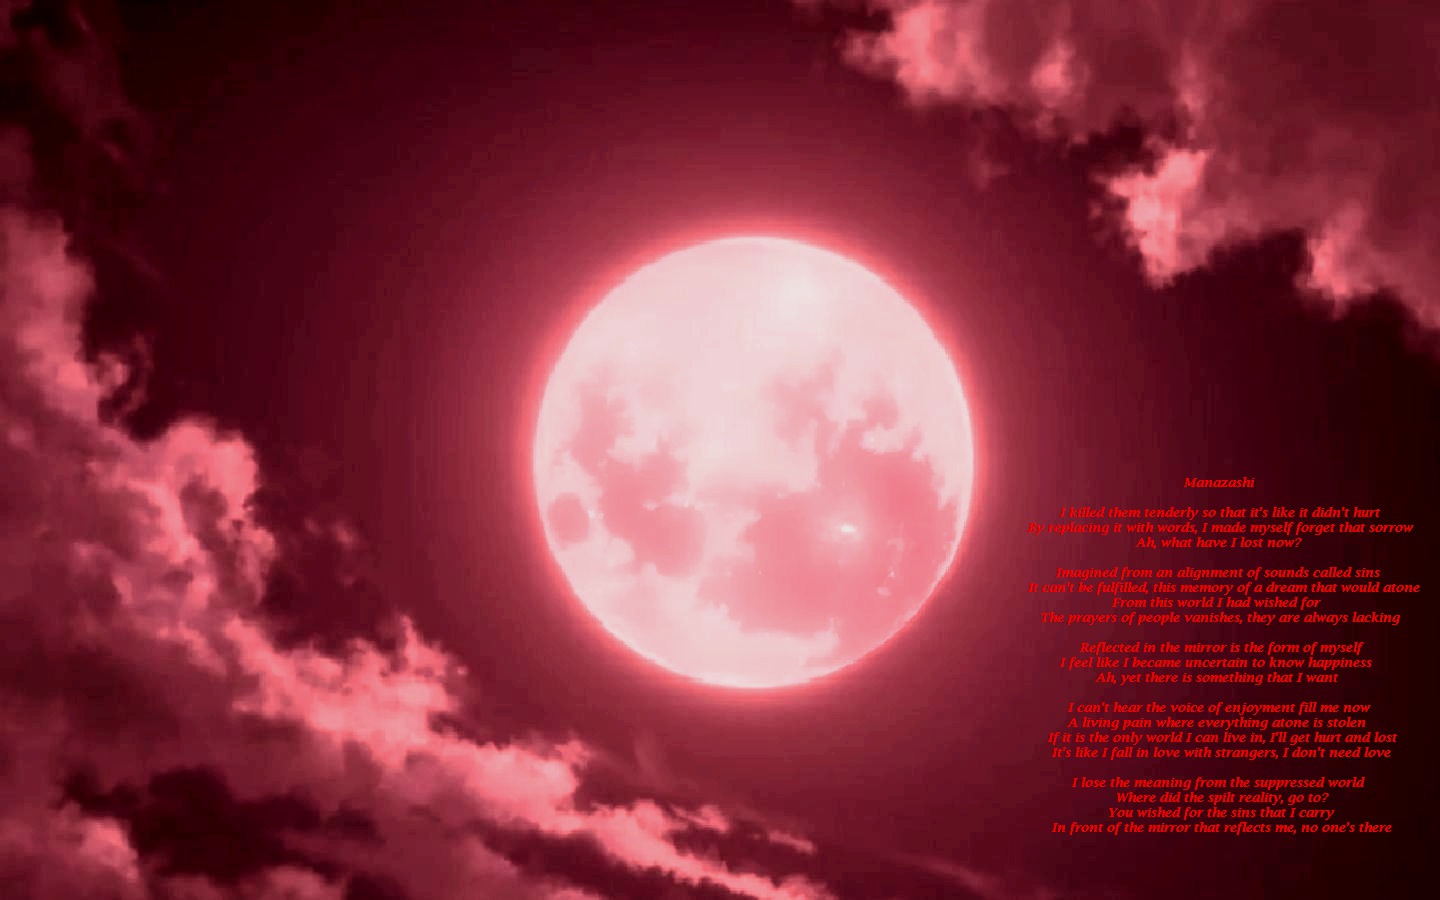 Аниме фон красная луна (46 фото) .